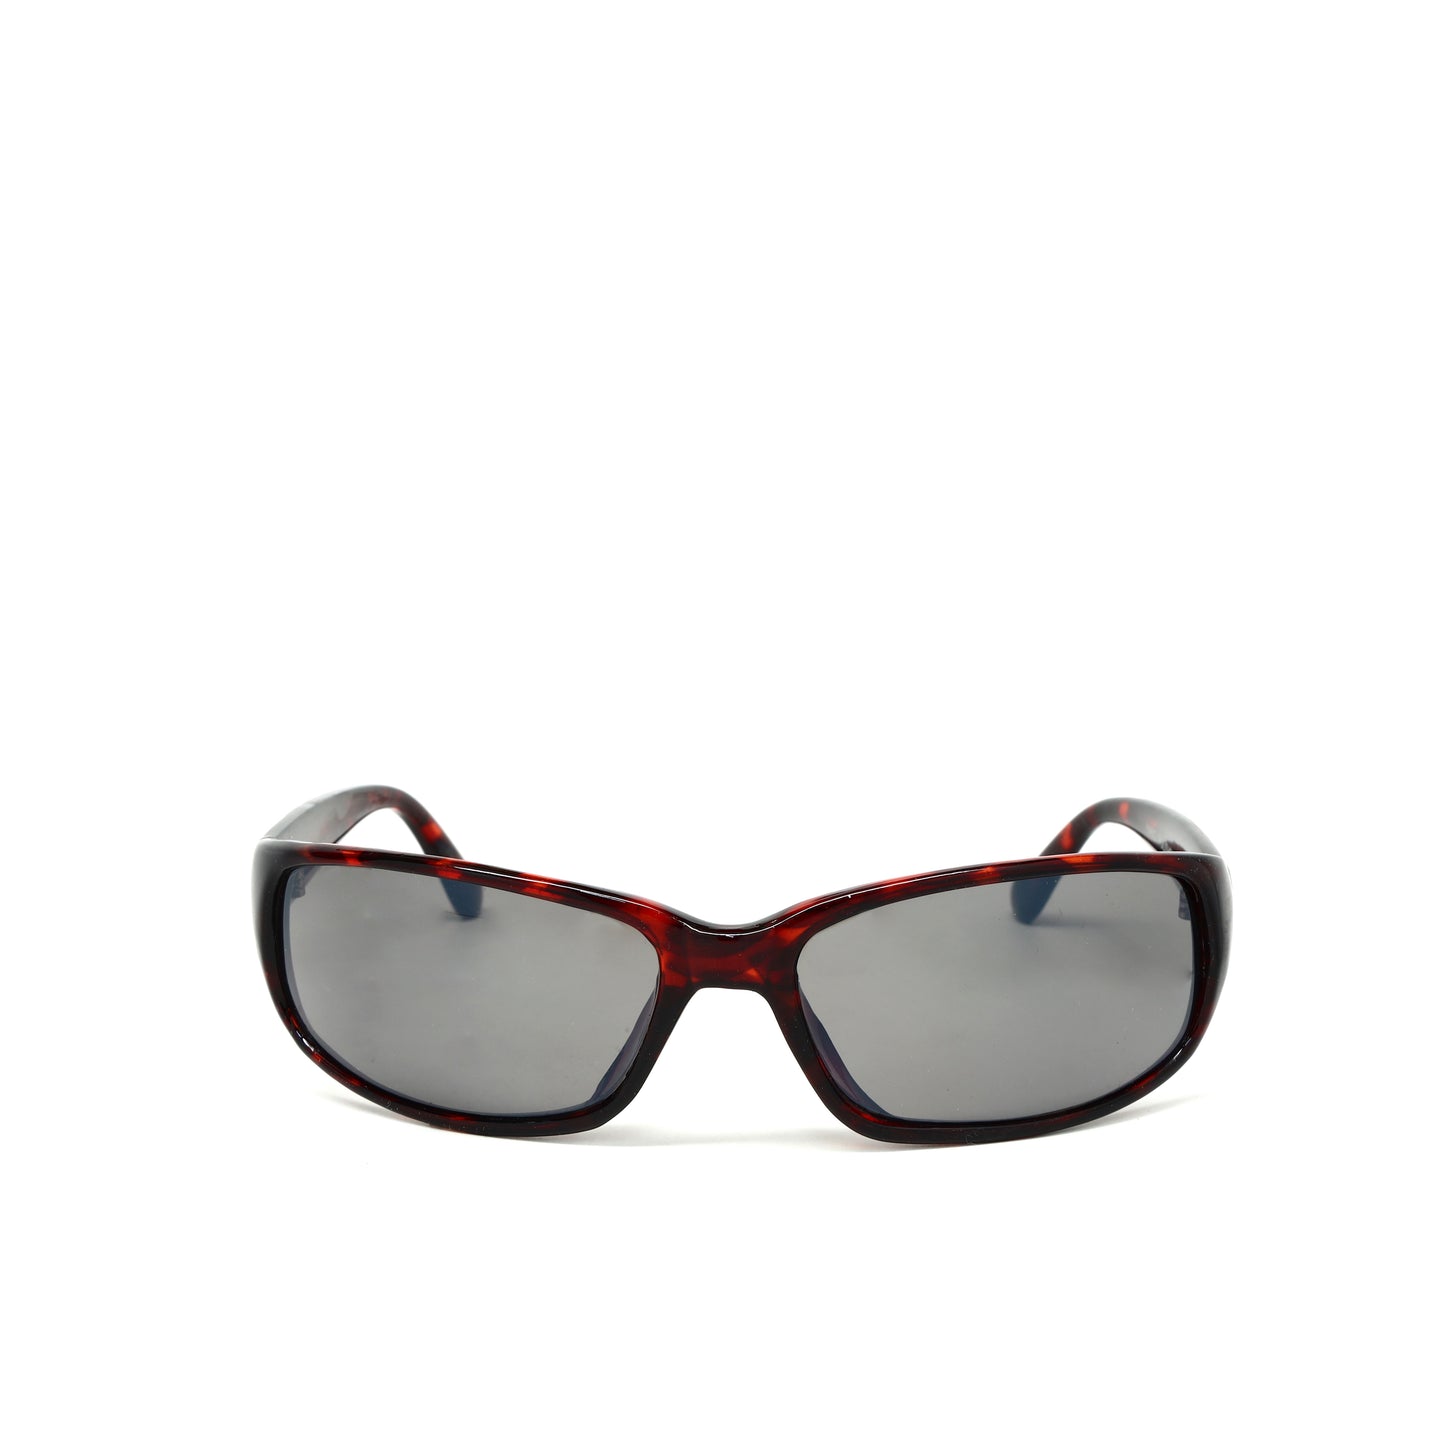 Prototype 9 Deadstock Oversized Rectangle Visor Sunglasses - Red